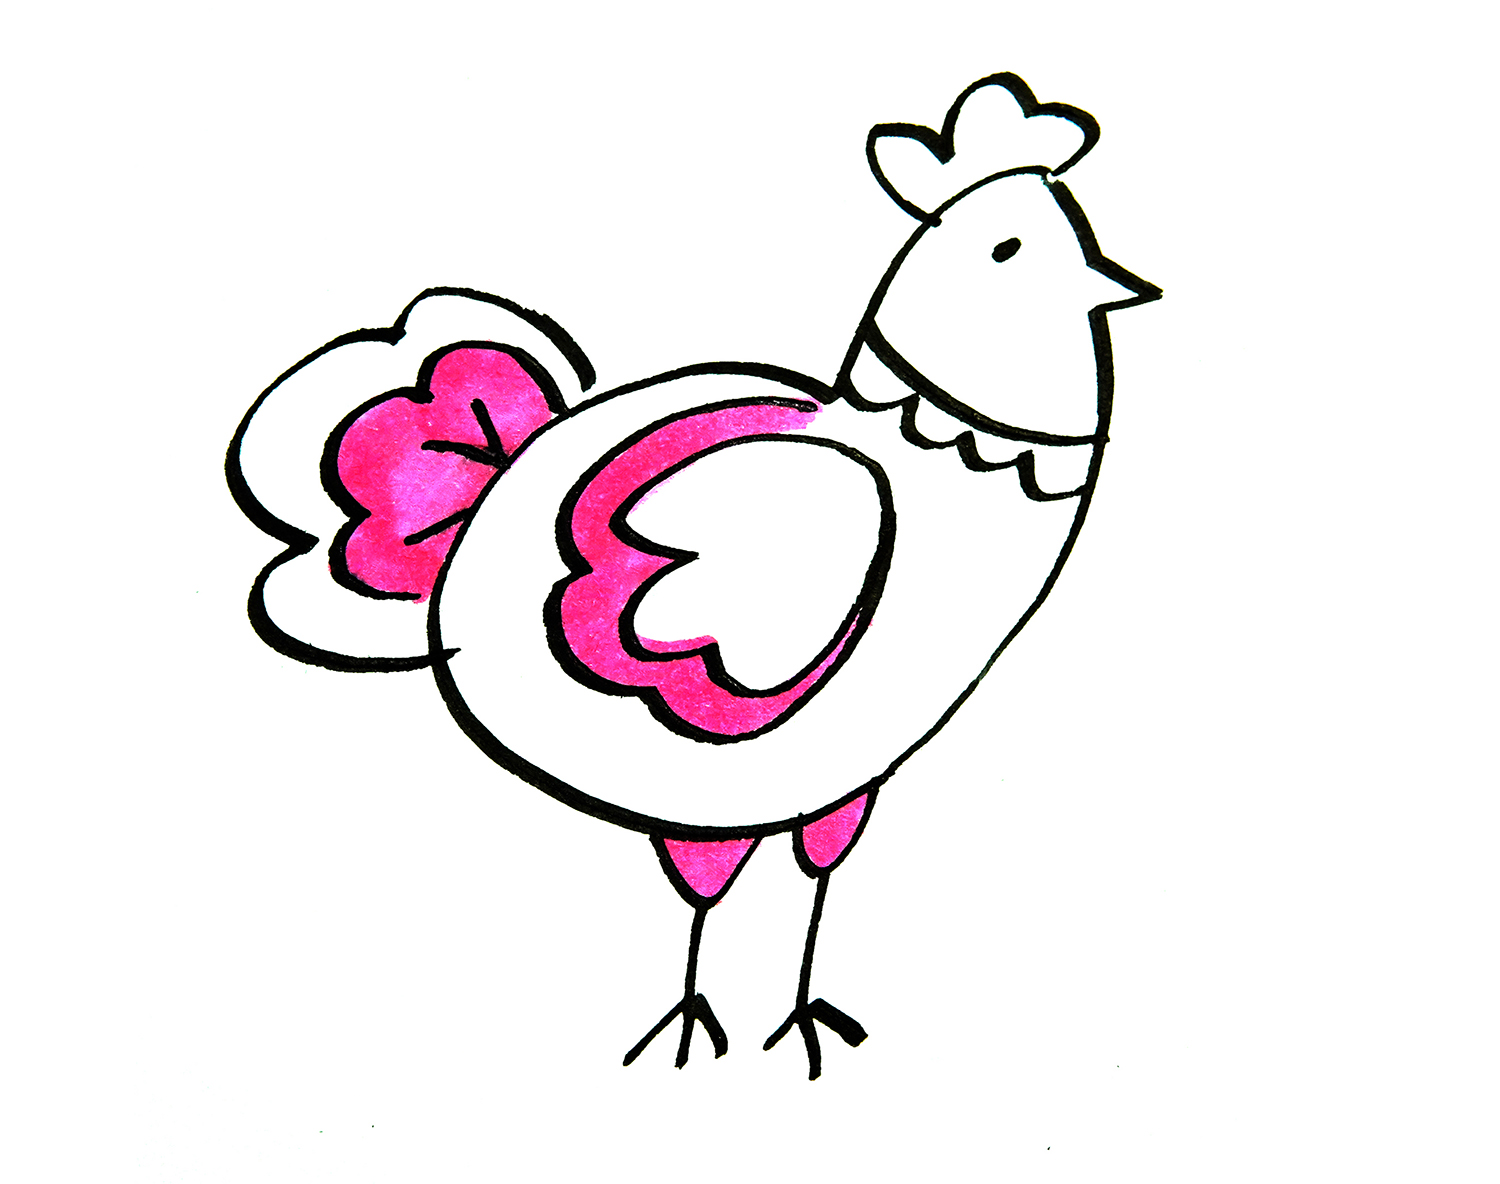 彩色大公鸡的画法 儿童简单有趣的简笔画教程 咿咿呀呀儿童手工网